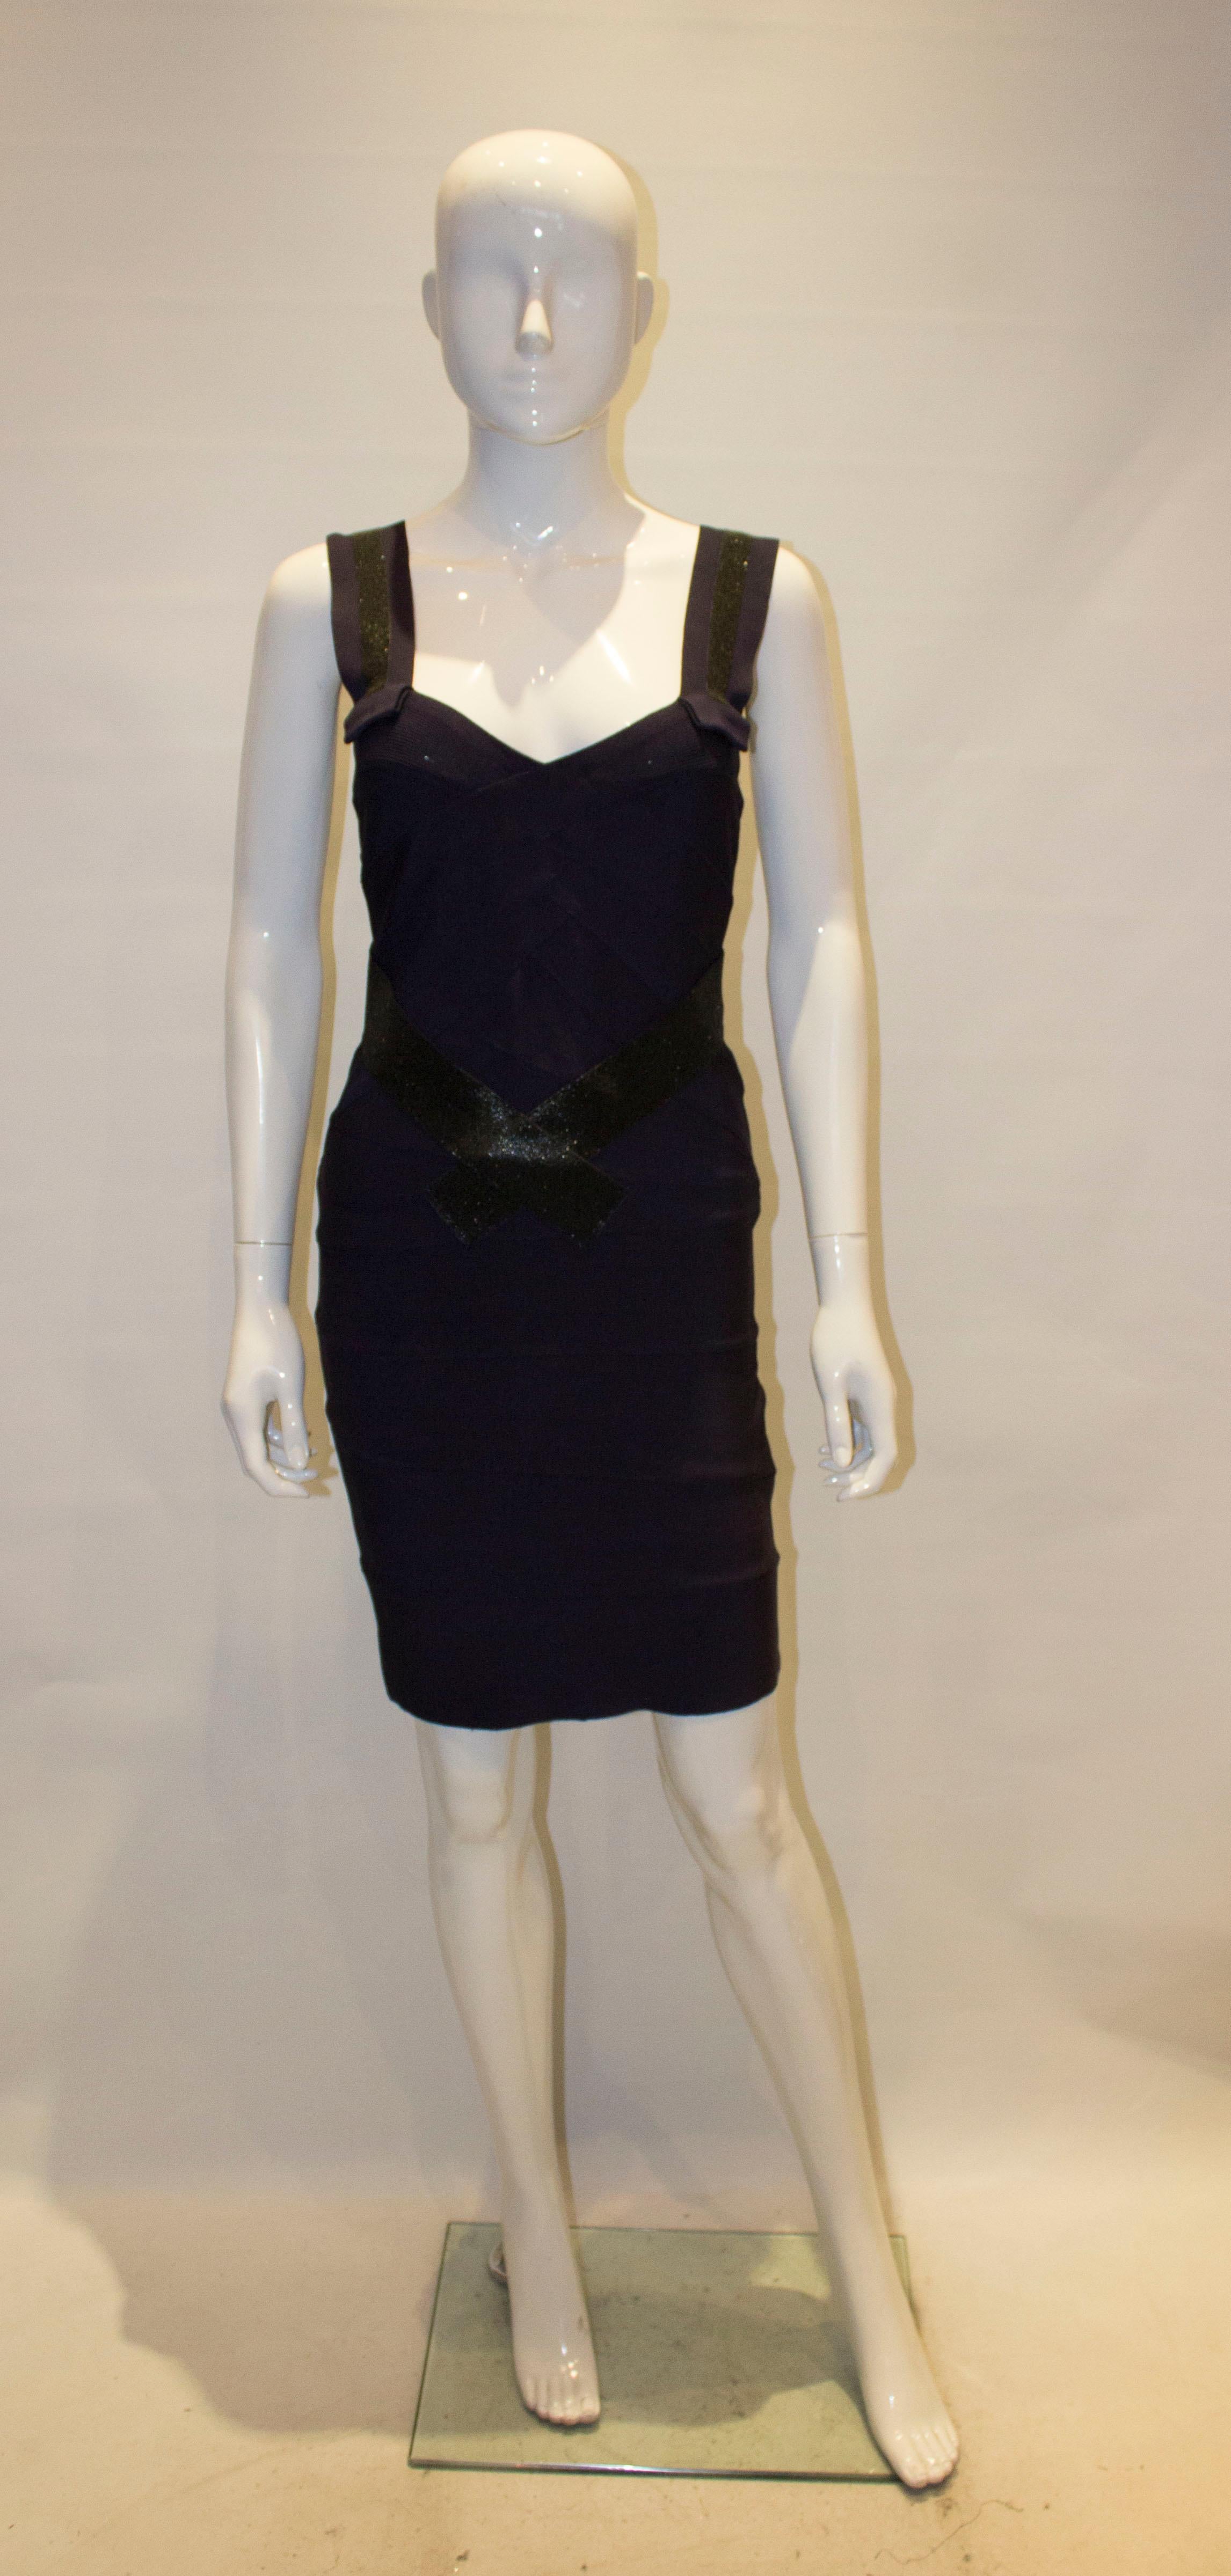 Une robe de cocktail chic signée Herve Leger. La robe est dans un joli  couleur aubergine foncé avec des détails scintillants noirs sur les bretelles, le devant et le dos.
Mesures : la robe est marquée taille S, buste 32'' avant stretch, taille